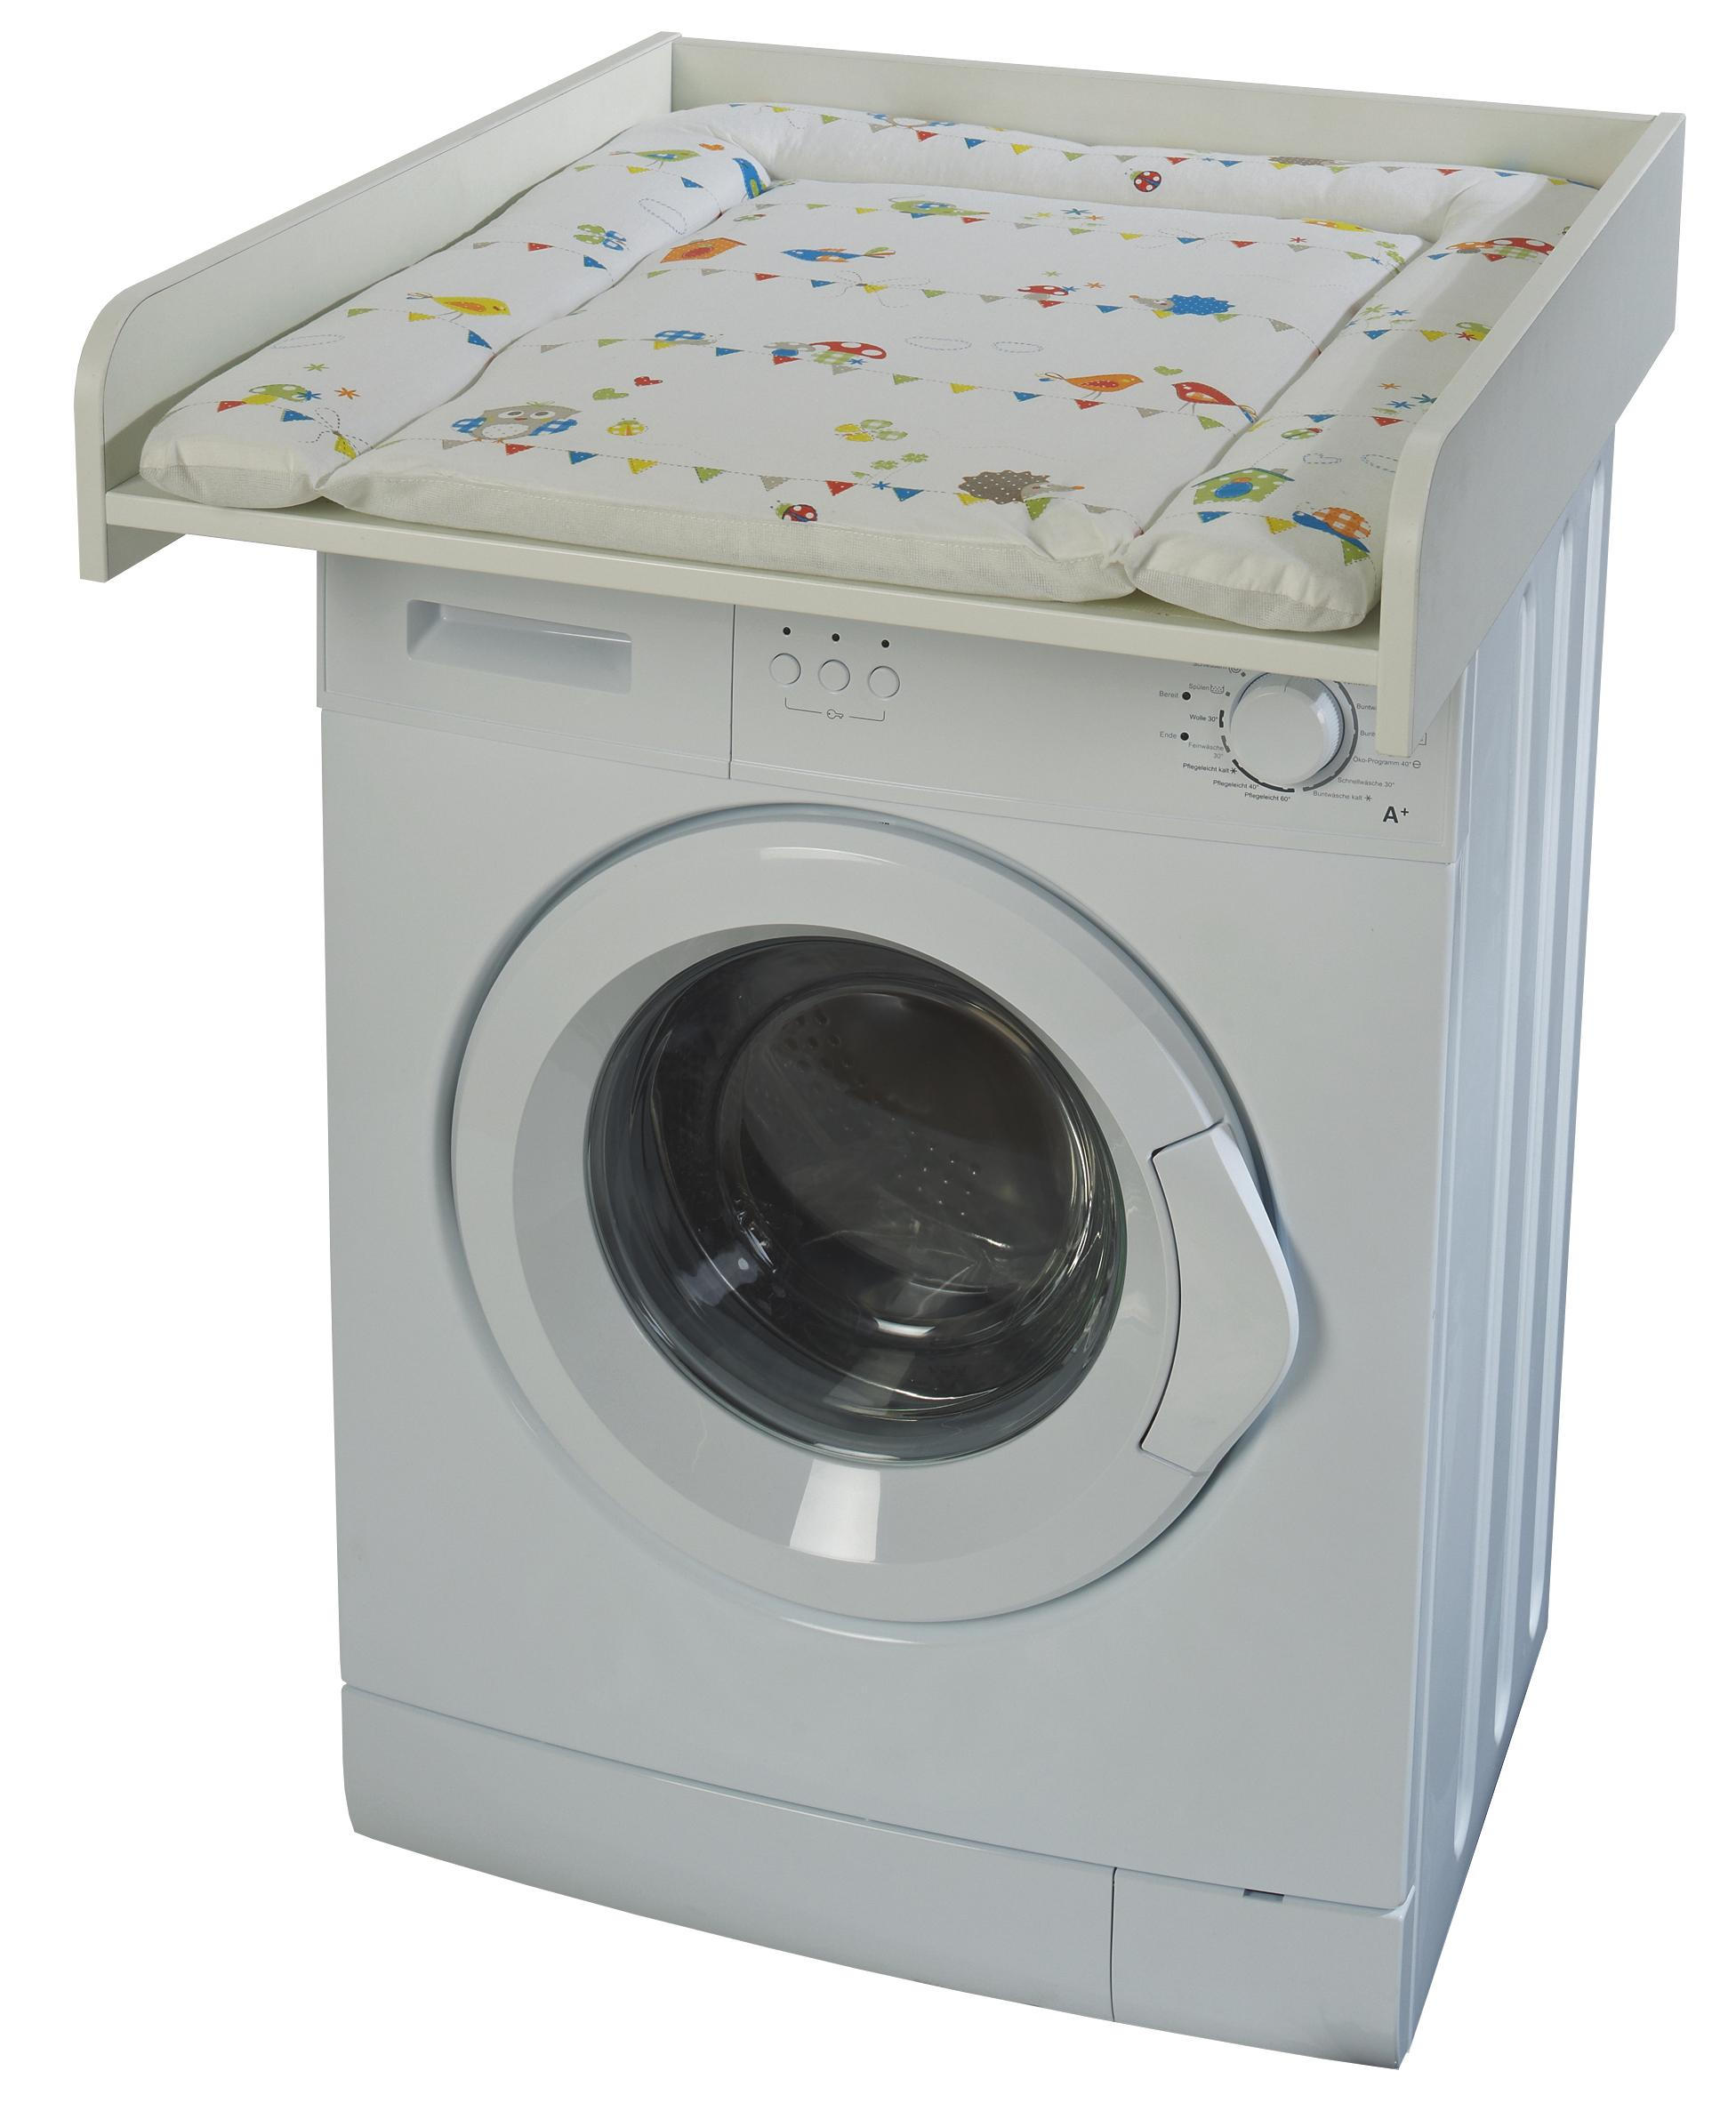 Wickelplatte Fur Waschmaschine Online Kaufen Xxxlutz